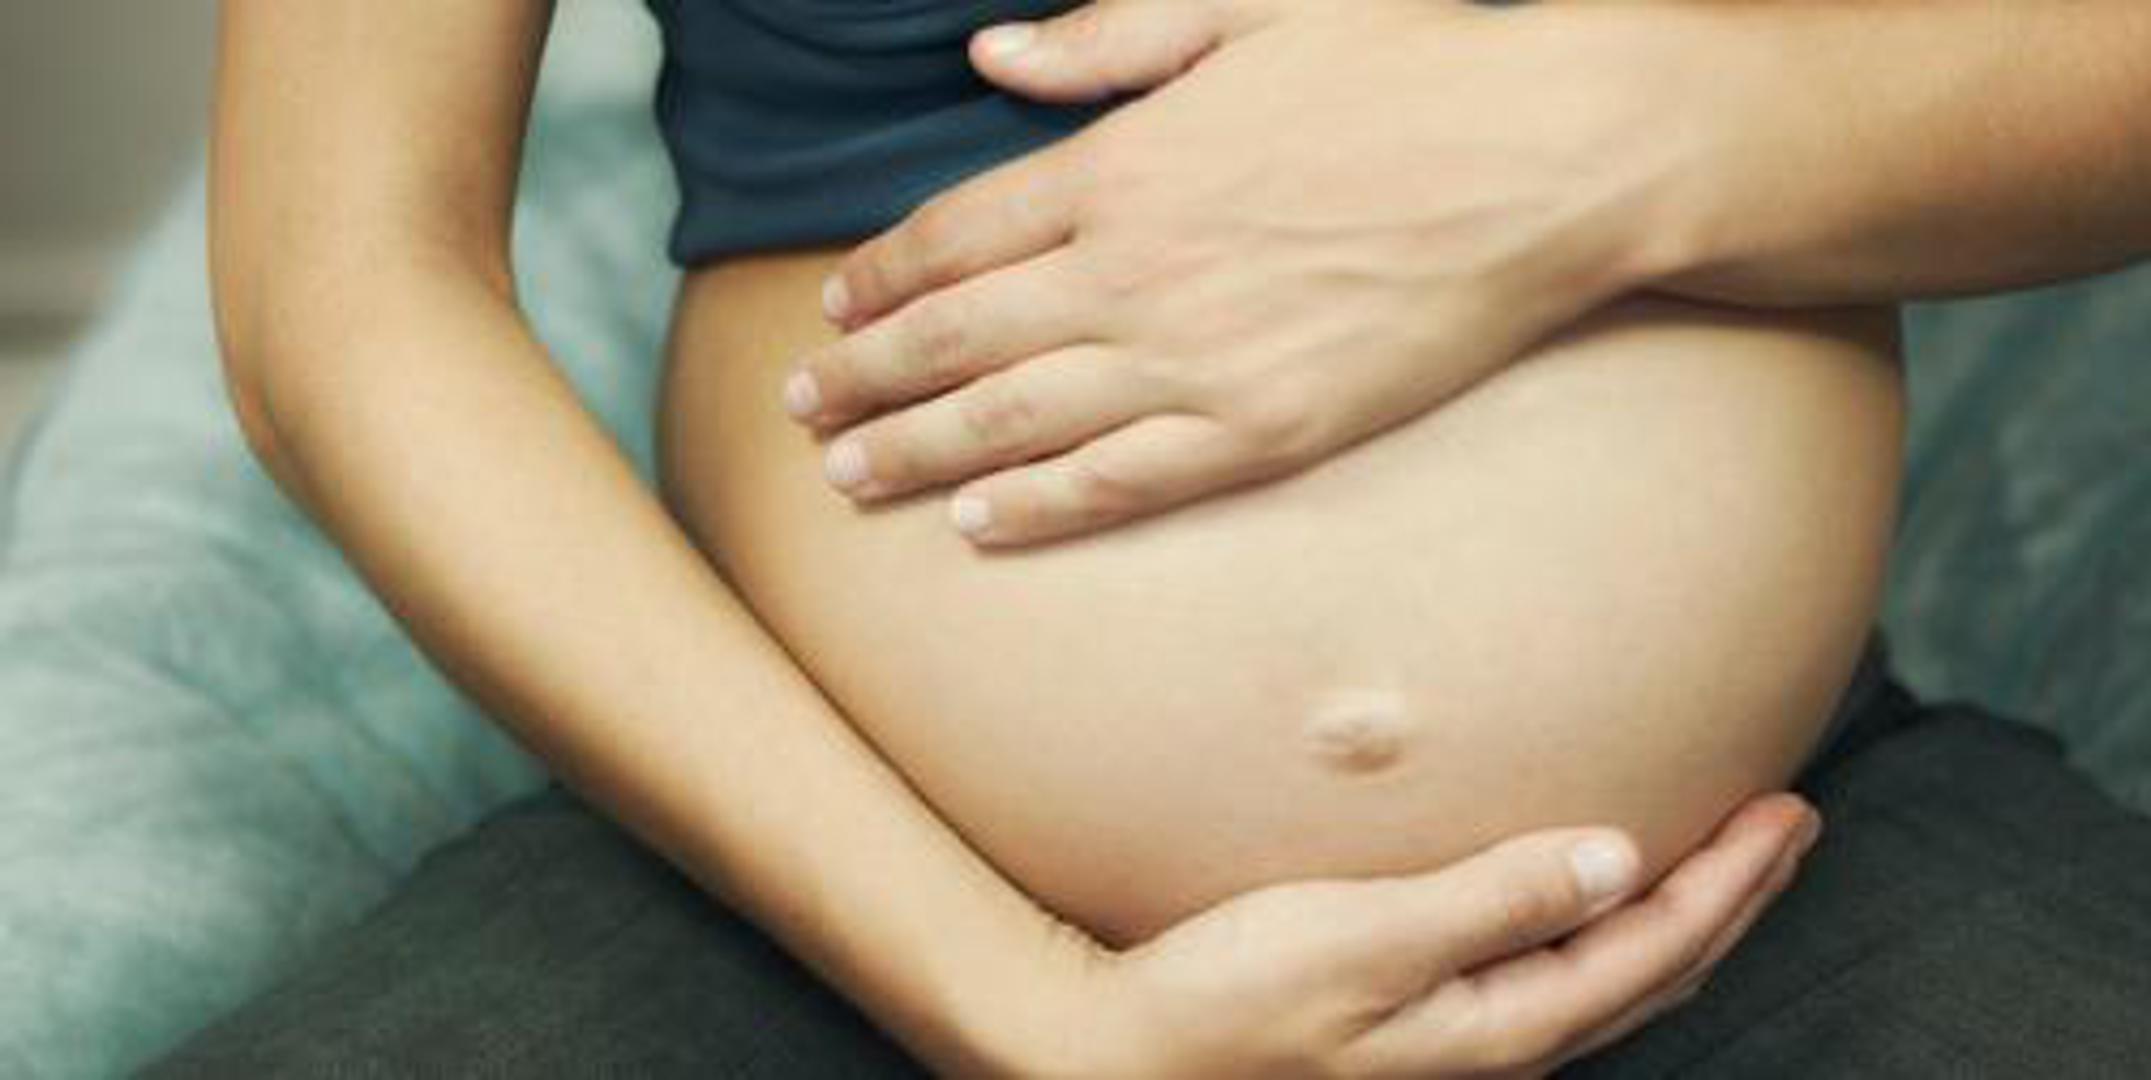 Tokofobija se može javiti u različitim životnim razdobljima: prije trudnoće, za vrijeme trudnoće pa čak i nakon poroda.